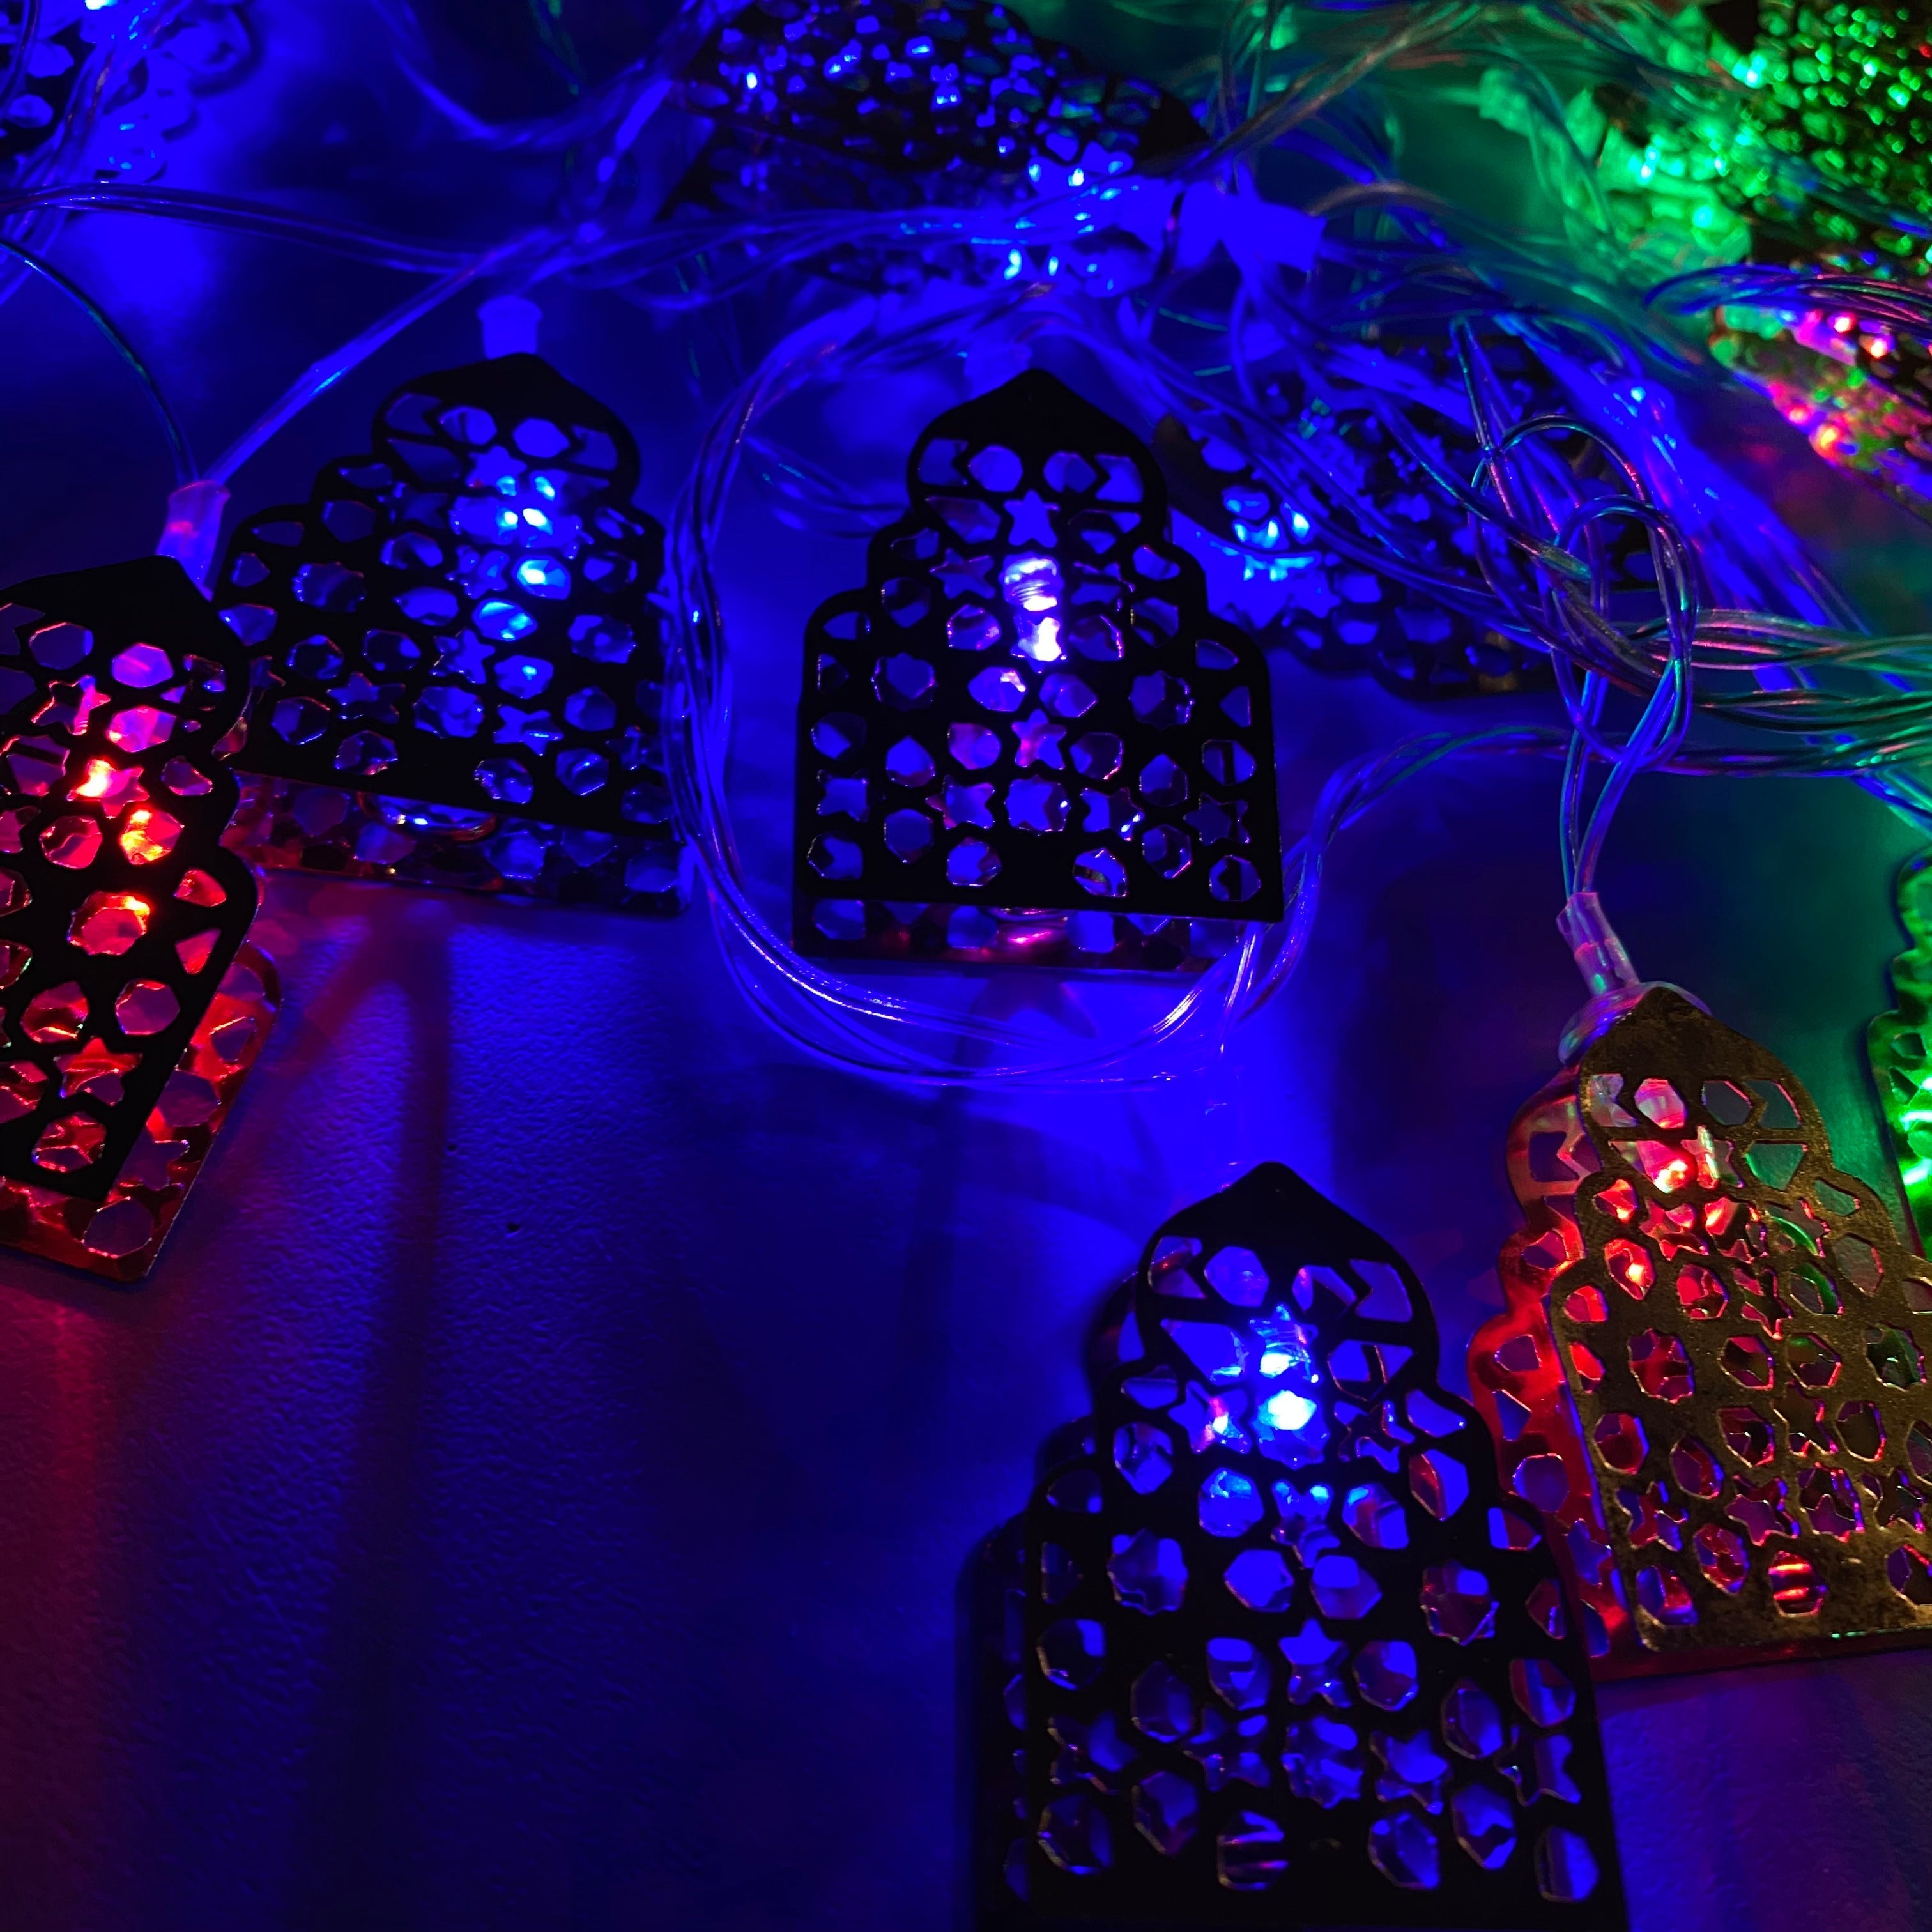 Led Light Lantern Ramadan Decoration-Rmd66- زينة رمضان ضوئية